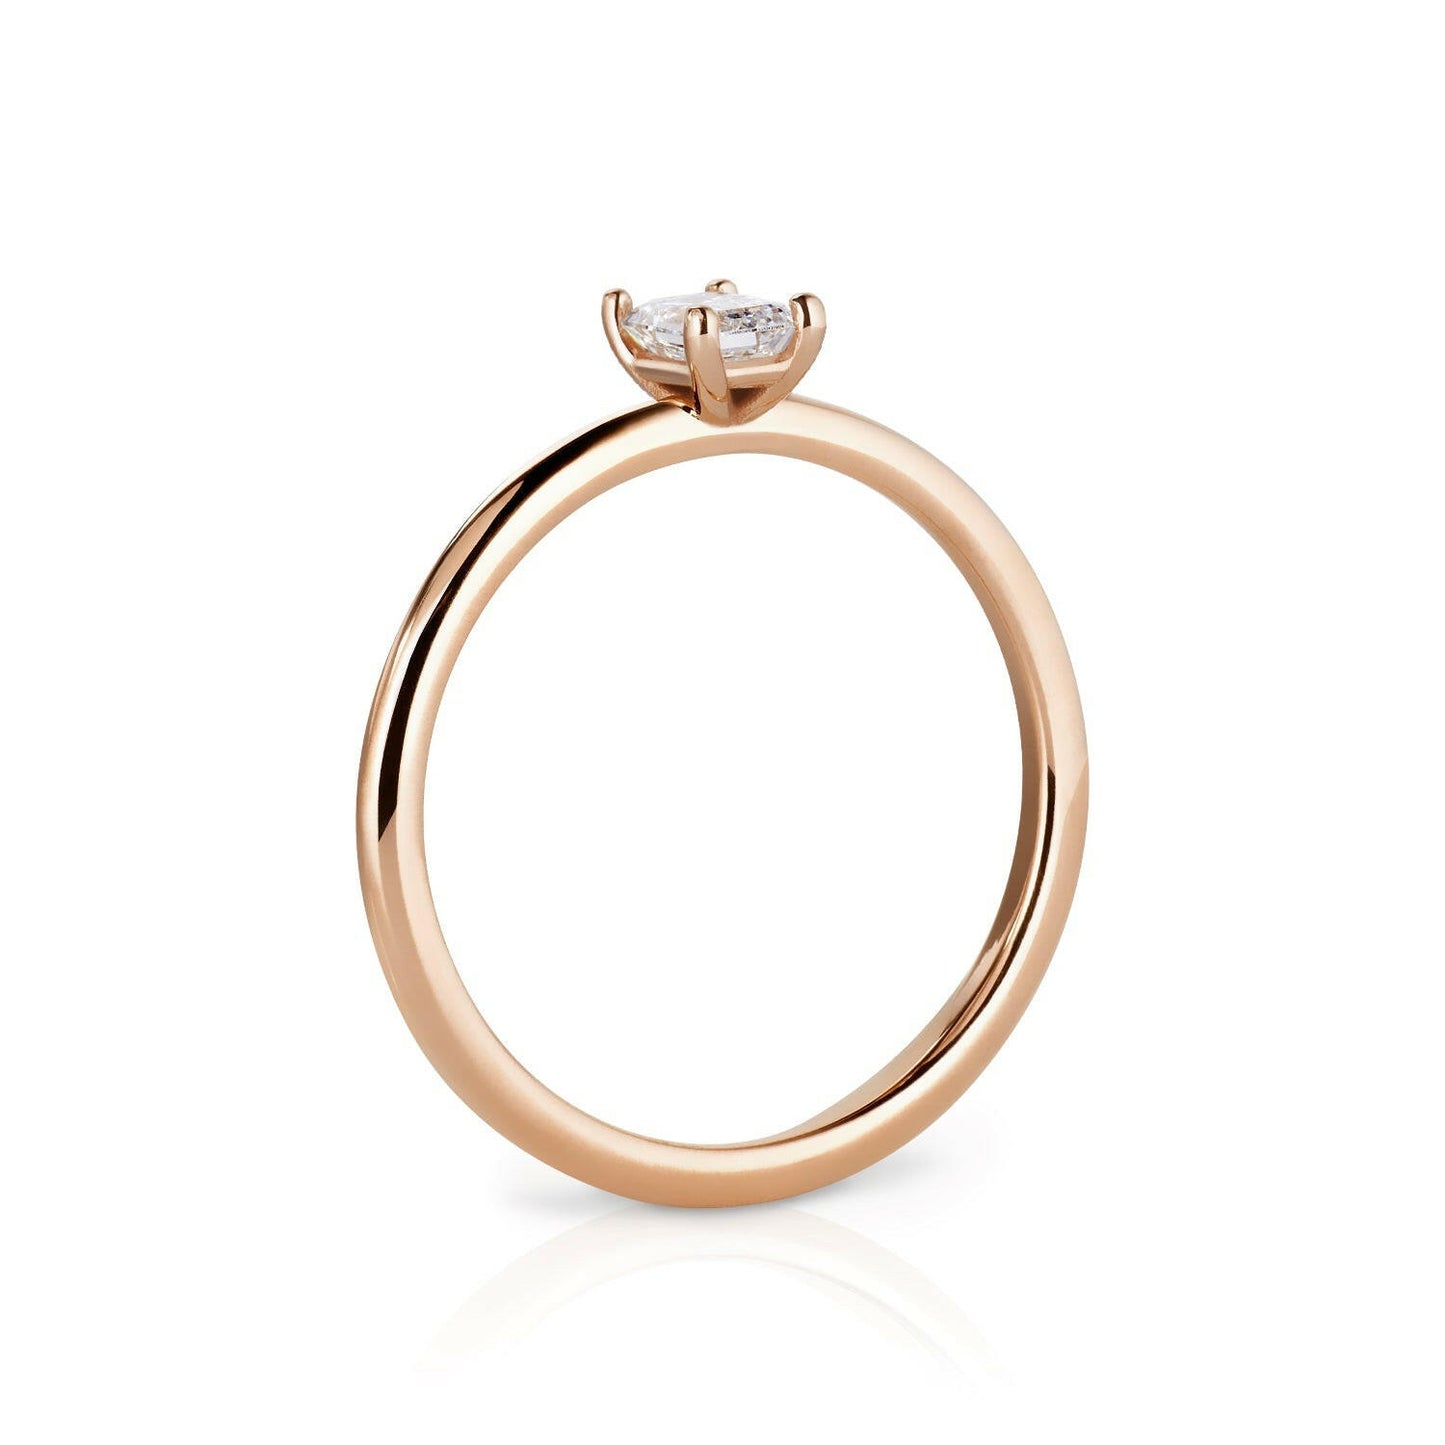 Ring Khloé, Roségold mit Diamant 0.3 ct. von The Good Bling online kaufen (Ref. TGB-Khloe-RG-03)